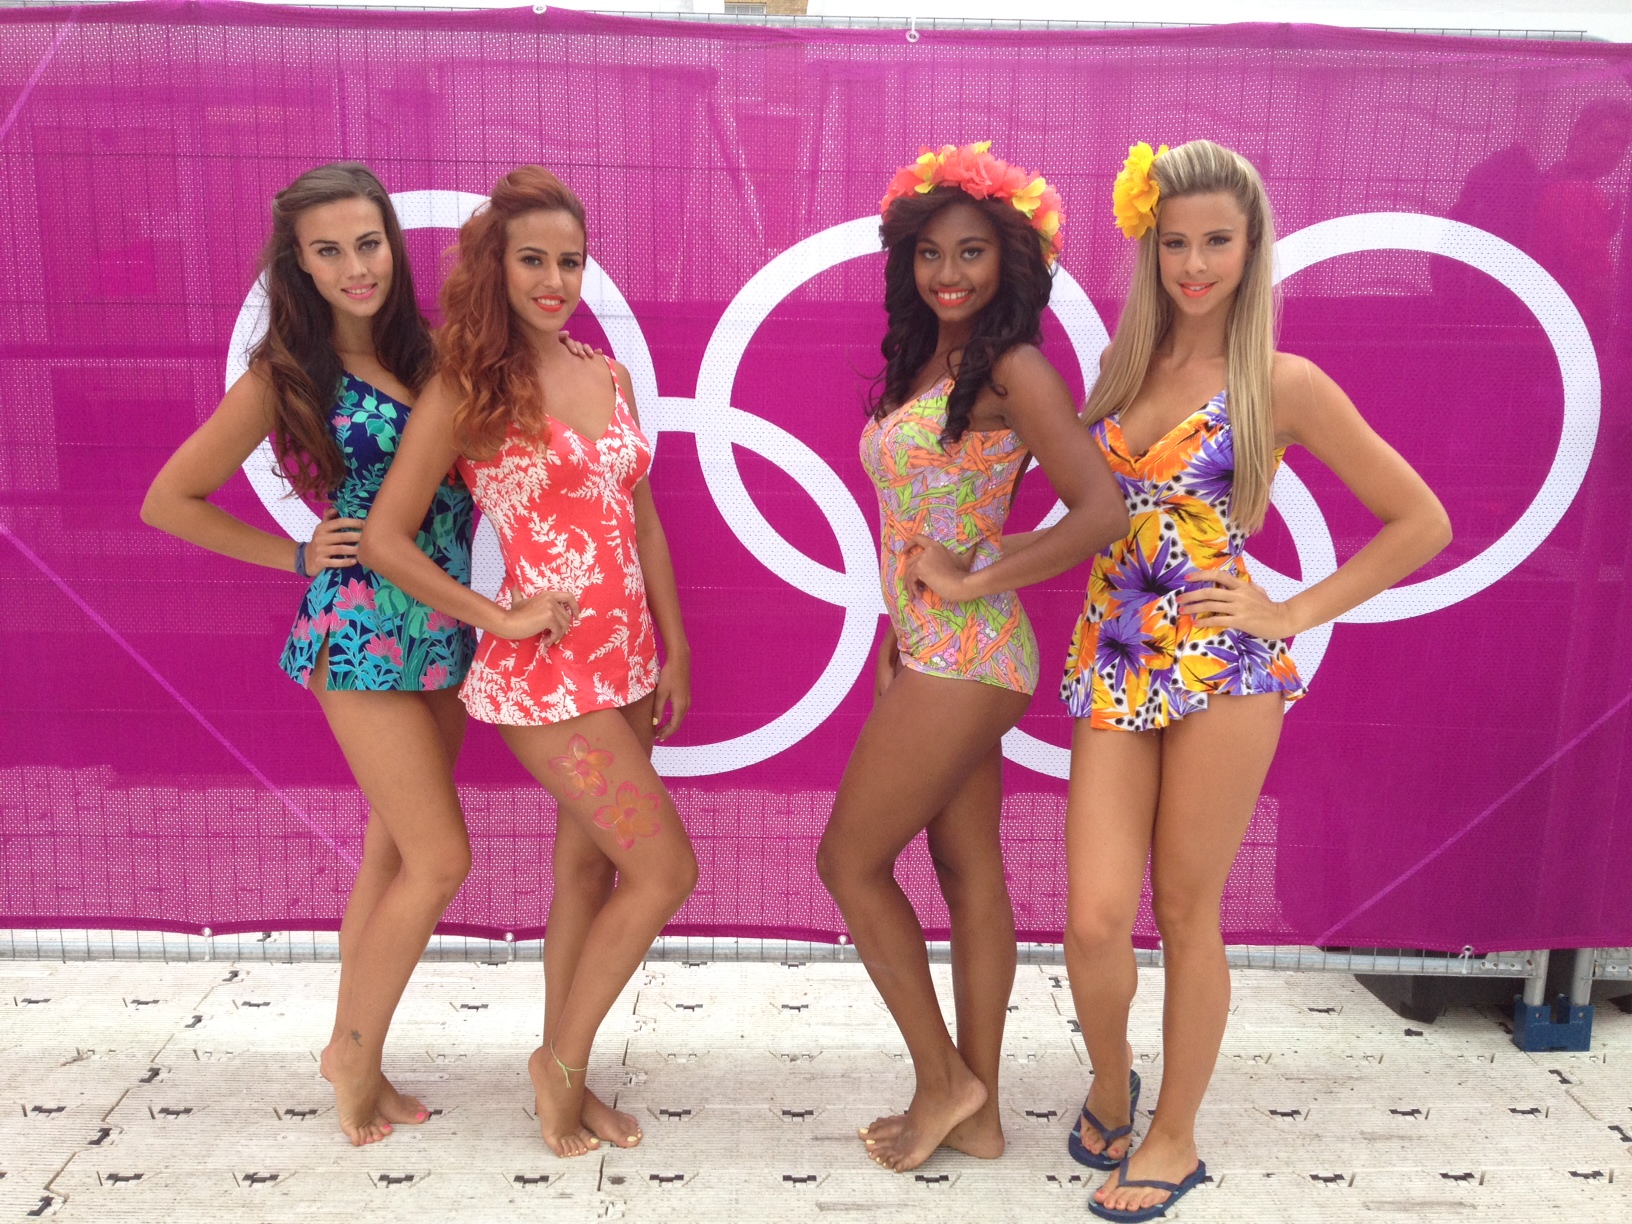 Glamour : Les Cheerleaders du Beach Volley réchauffent les Jeux Olympiques de Londres 2012